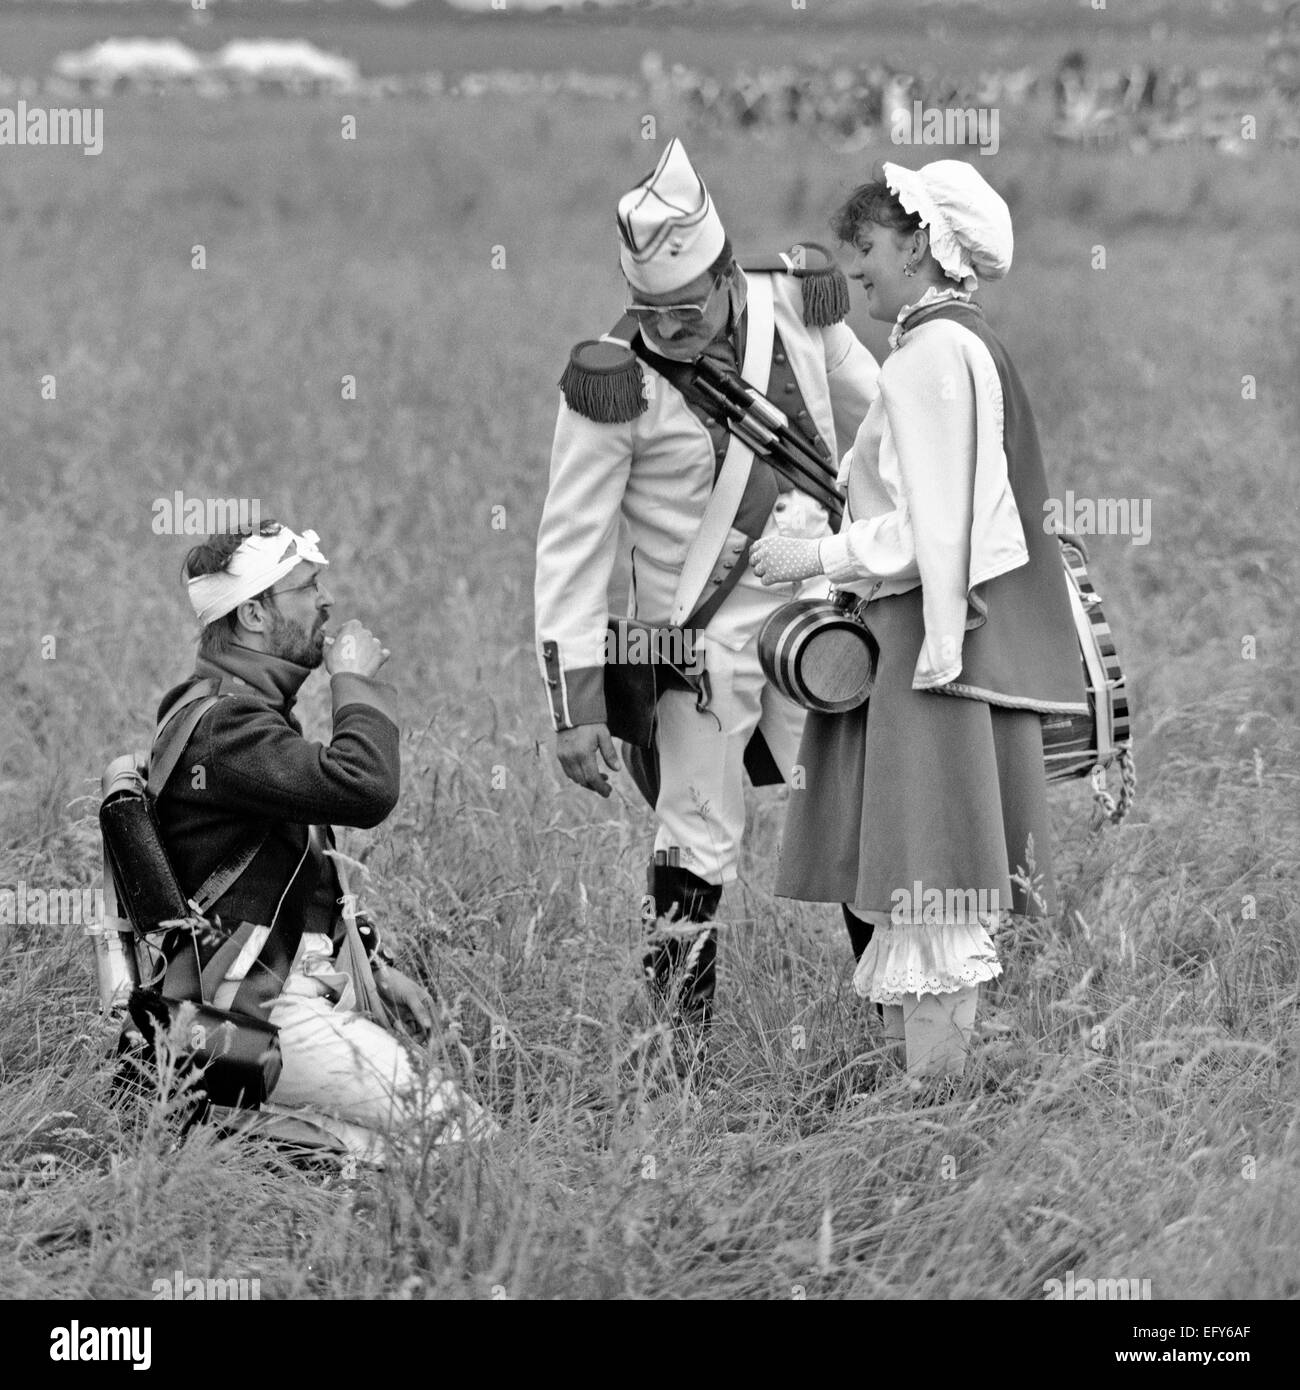 WATERLOO, Belgien-CIRCA 1990: Schauspieler in Kostümen während die Nachstellung der Schlacht von Waterloo, die 1815 Napoleons endete Stockfoto